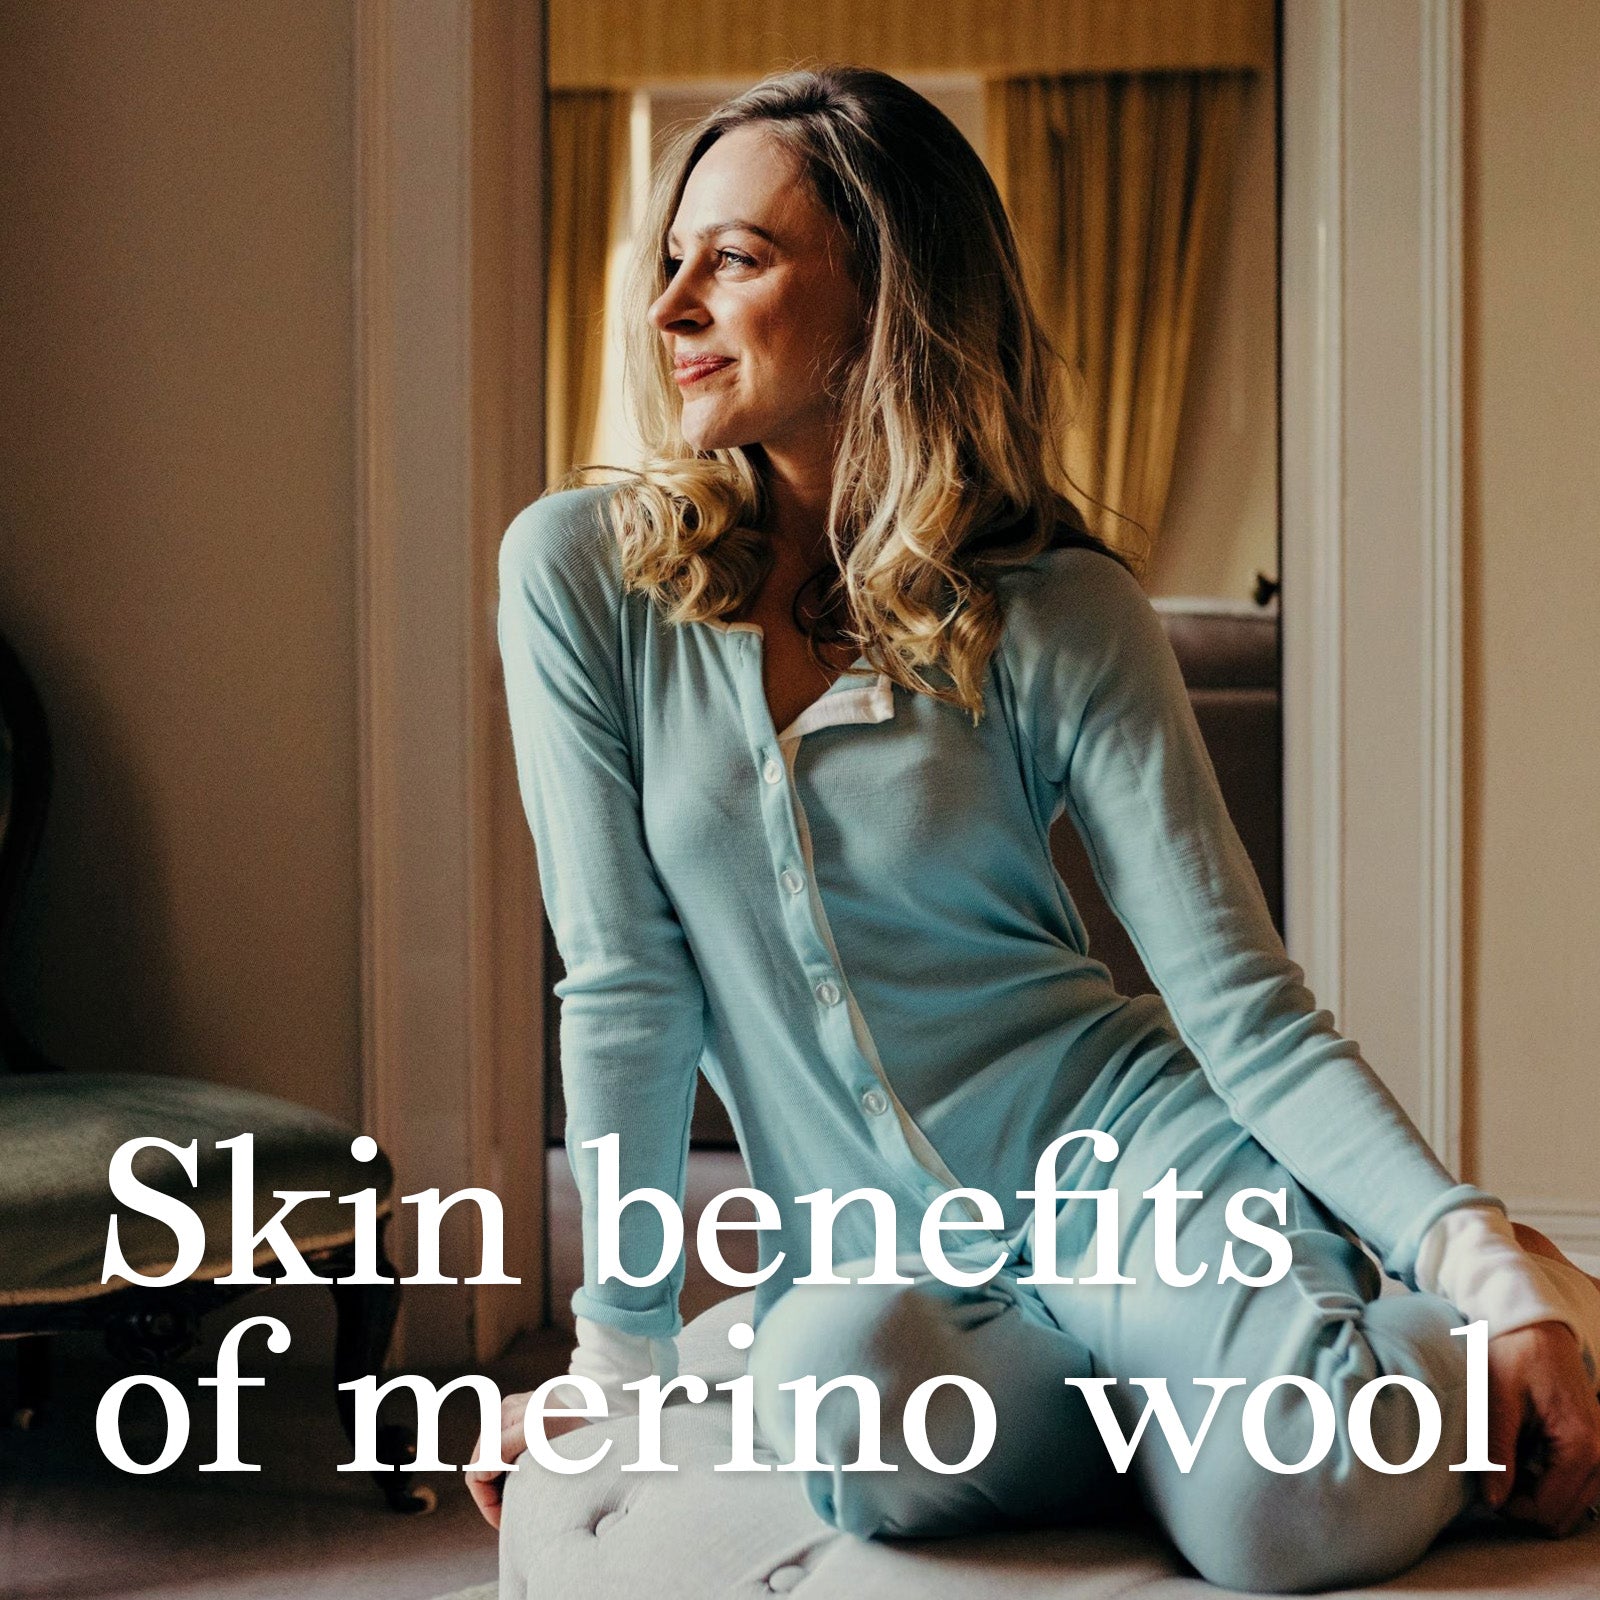 Skin benefits of merino wool